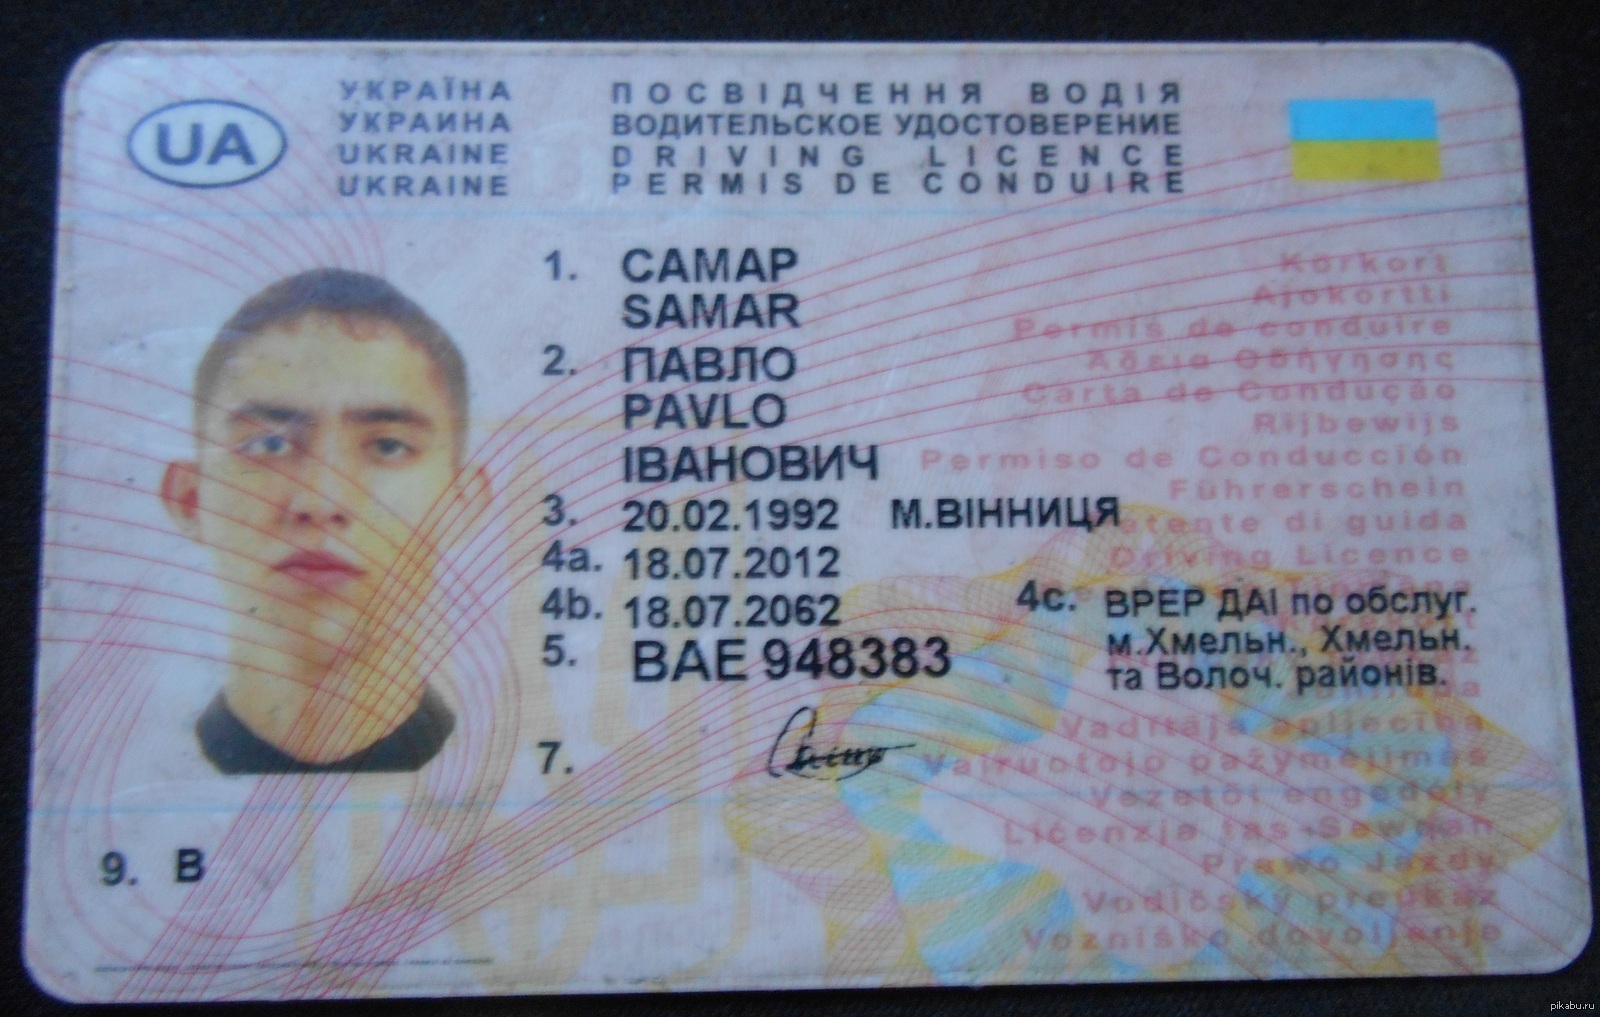 Украинские водительское. Водительское удостоверение Украины. Украинское водительское удостоверение. Украинское водительское удостоверение нового образца. Образец украинского водительского удостоверения.